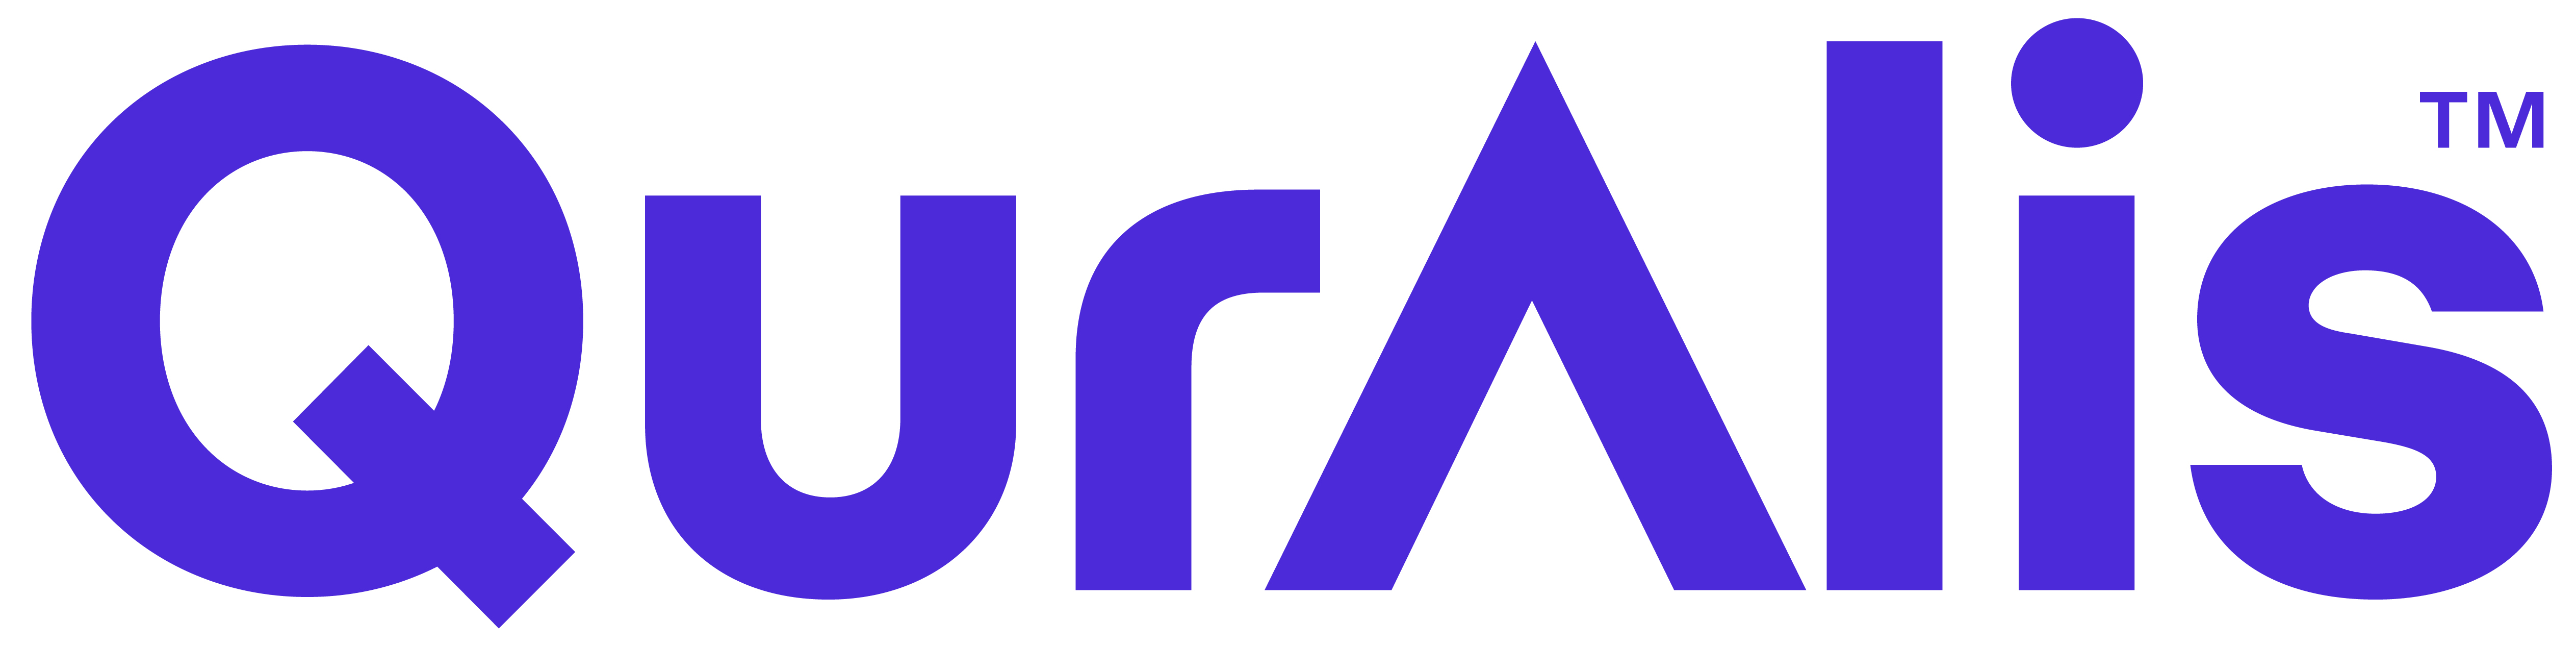 Quralis Logo Royal Blue RGB 01 NOV23